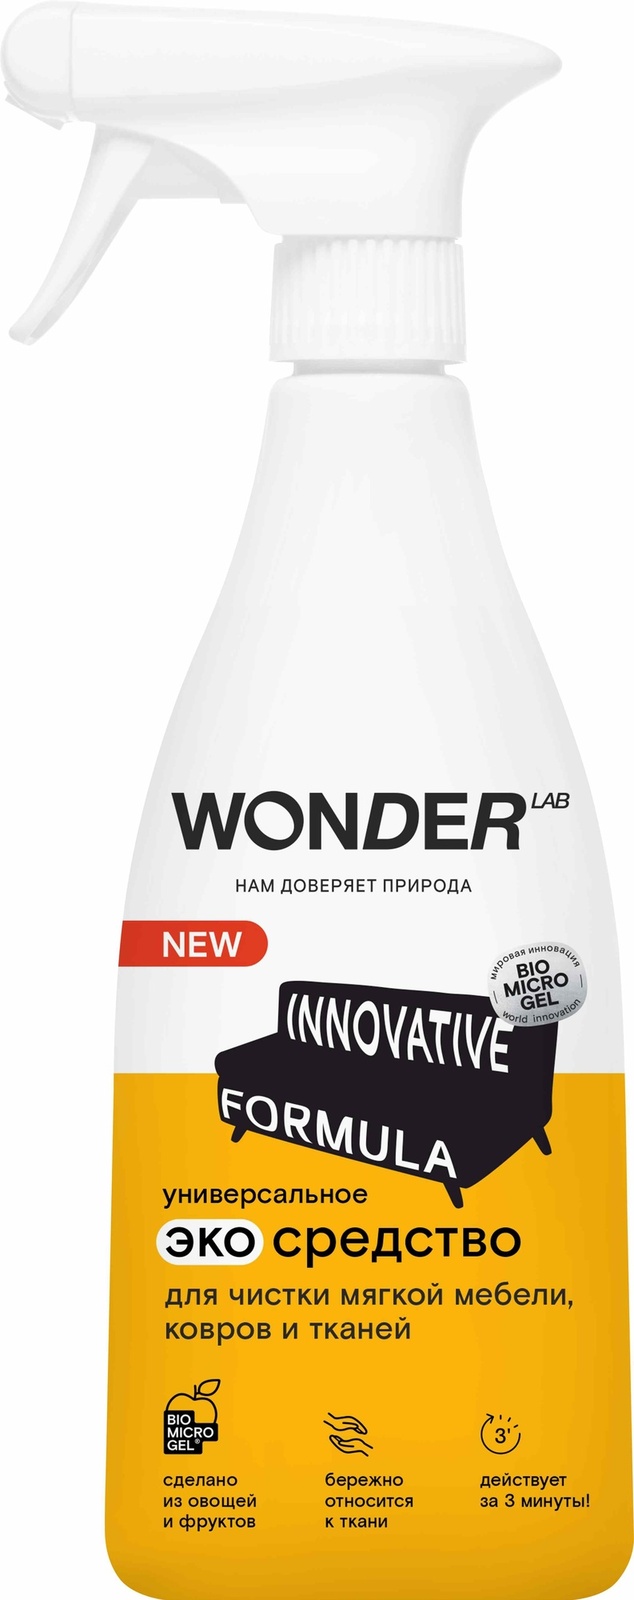 Wonder lab Wonder lab универсальное экосредство для чистки мягкой мебели, ковров и тканей (550 мл)